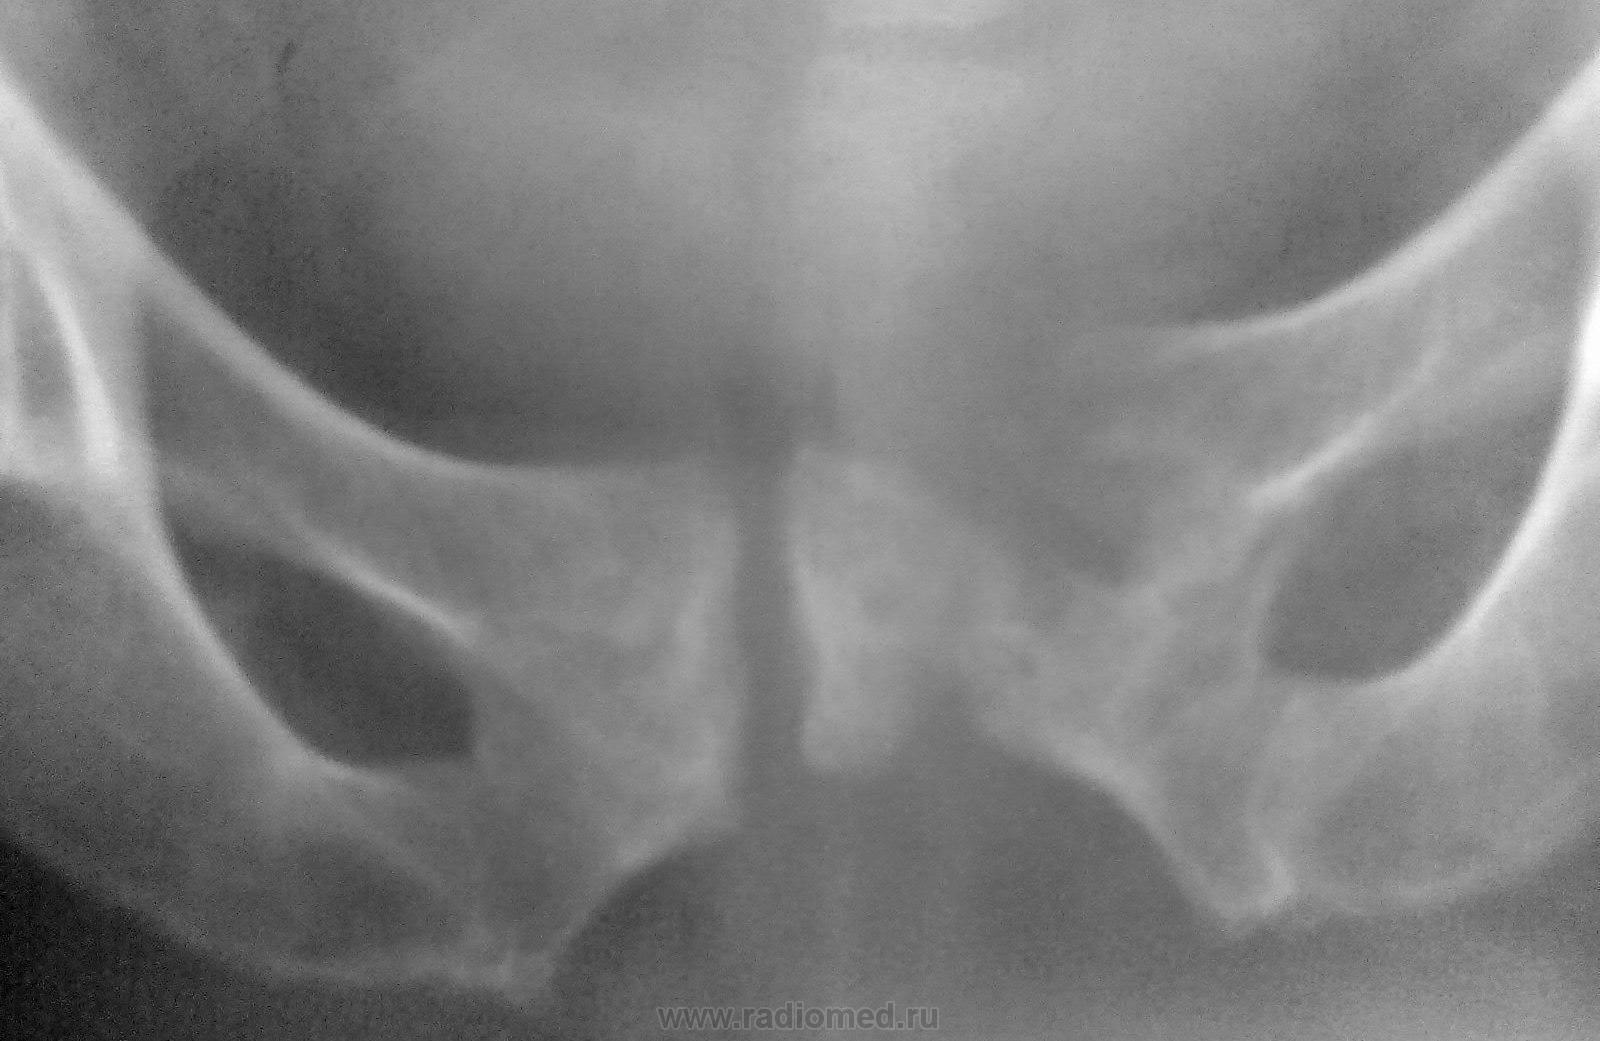 Кости таза переломы рентгенография боковая